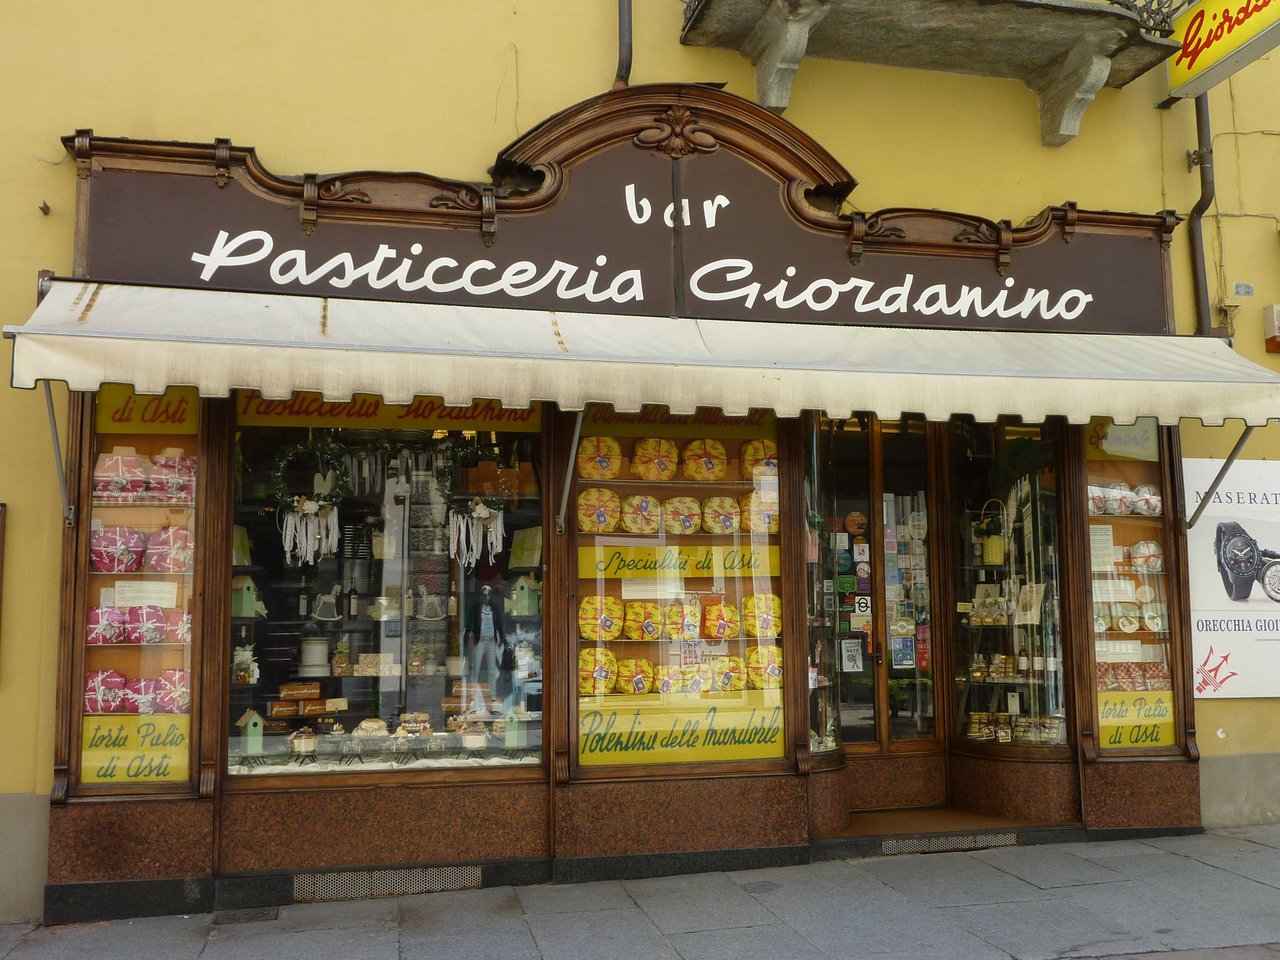 Pasticceria Giordanino, Asti